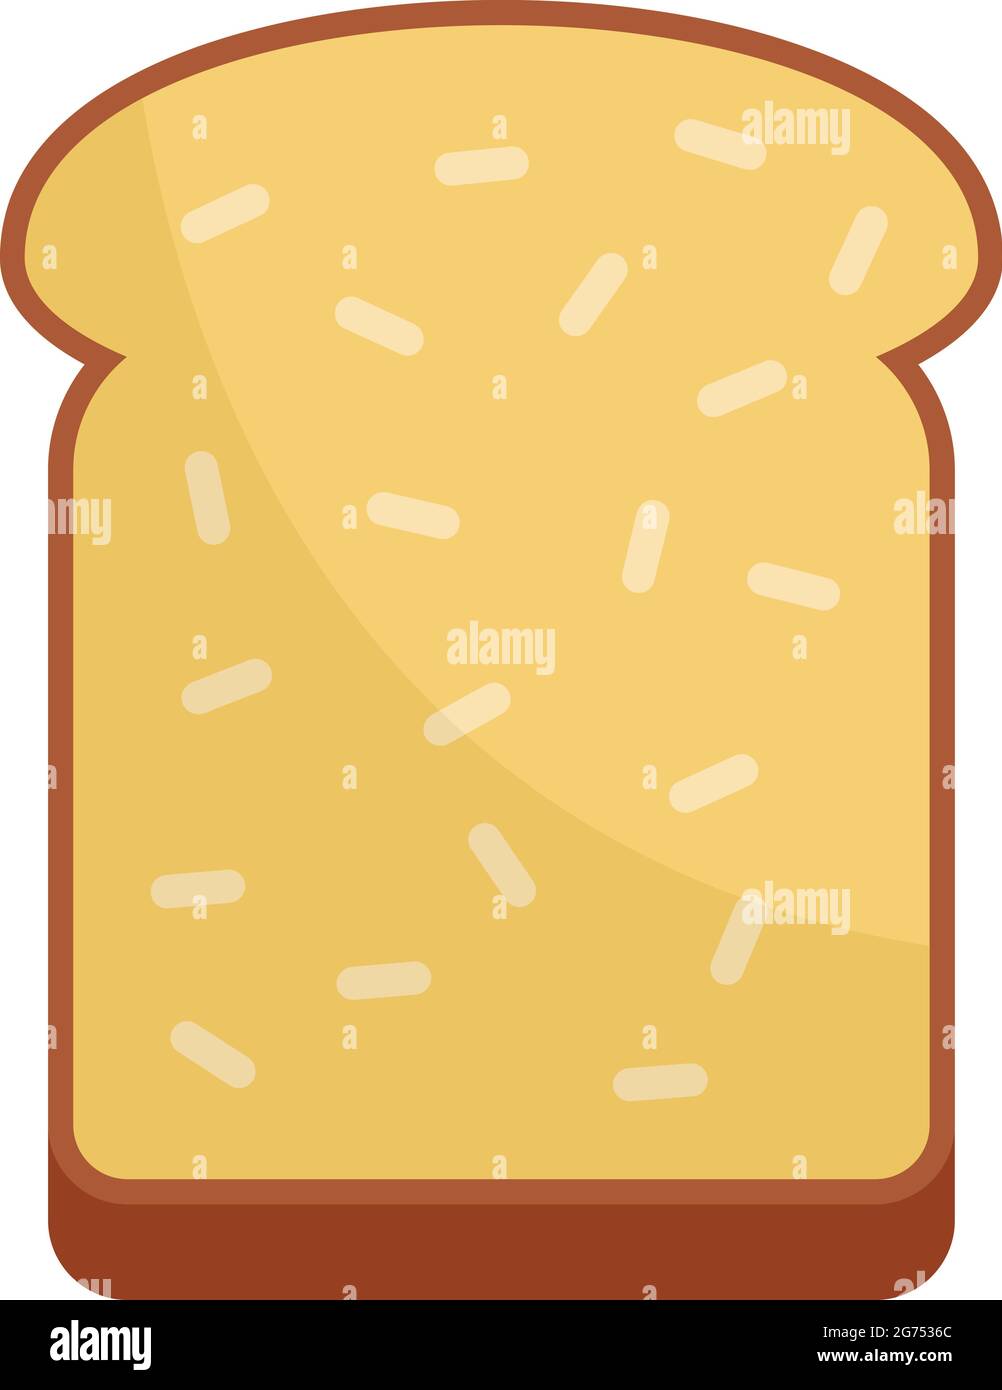 Breakfast toast icon flat isolated vector Stock Vector